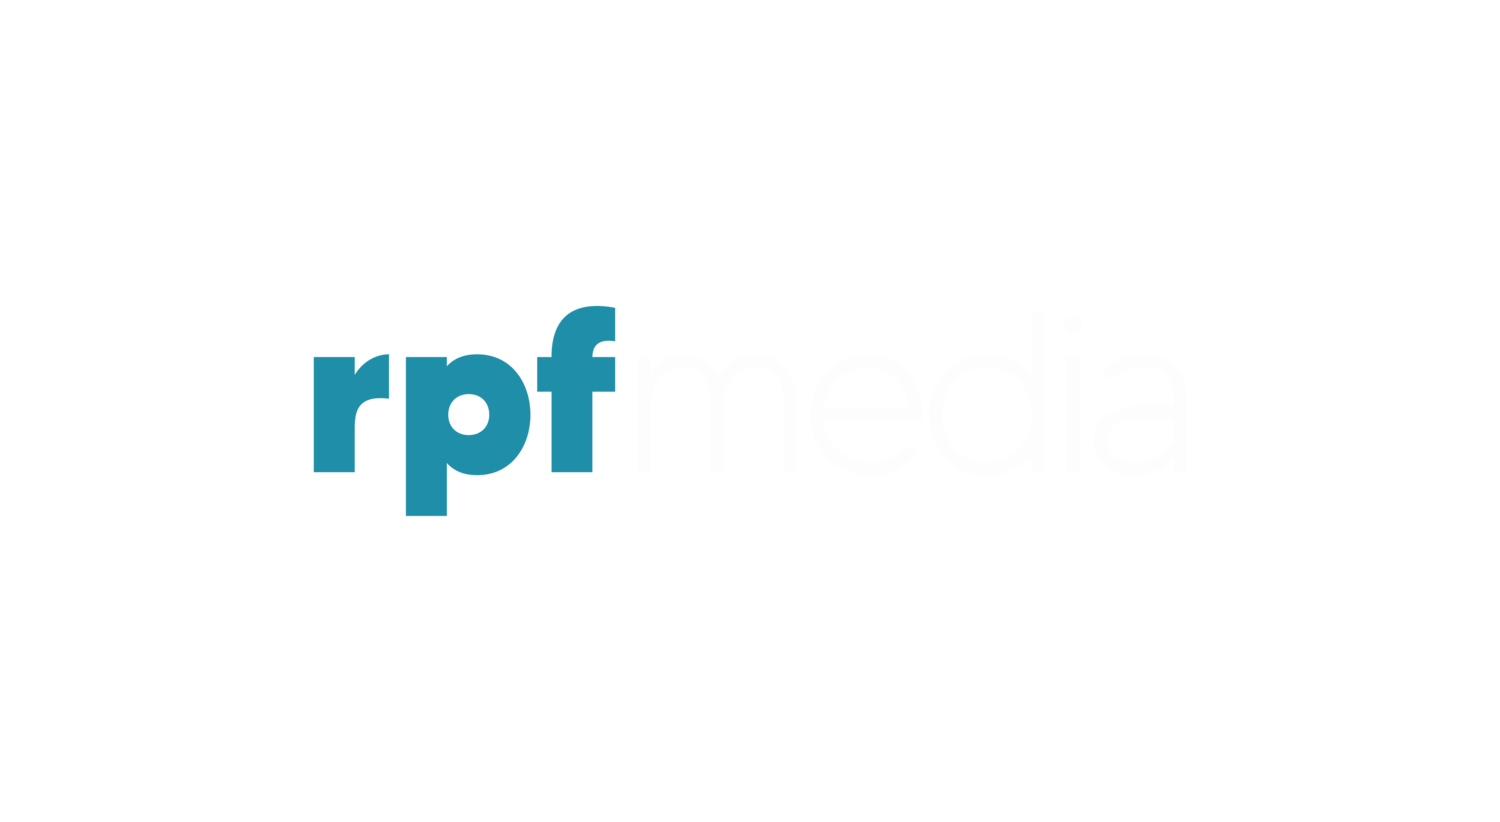 RPF Media - We Make Content